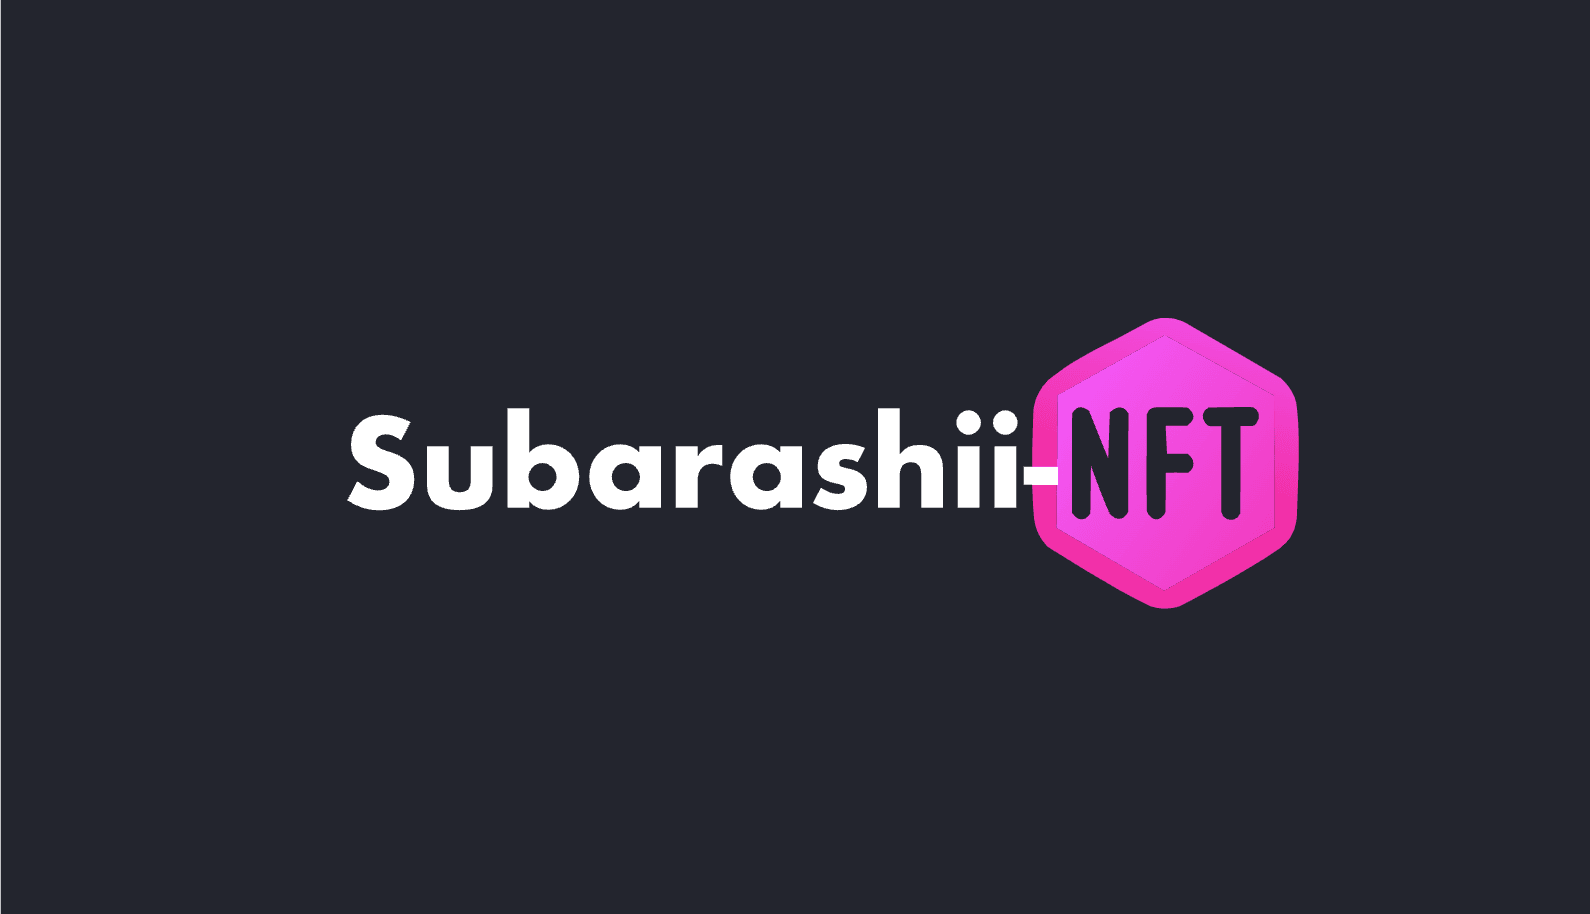 Subarashii-nft バナー